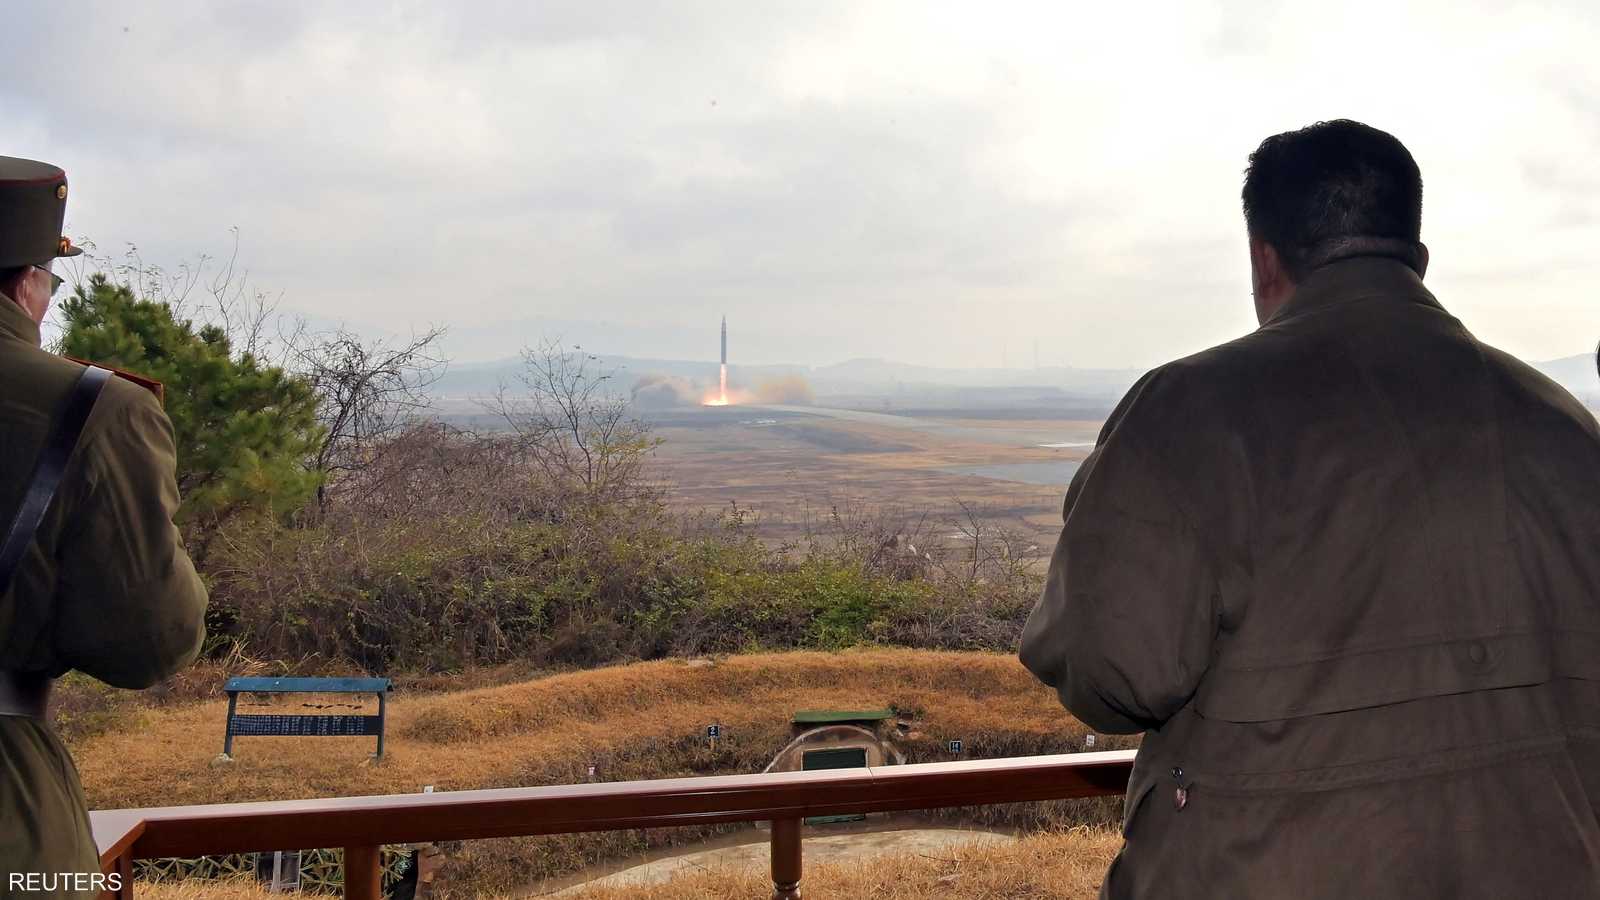 مجلس الأمن أعلن أنه سيعقد اجتماعا يوم الإثنين لبحث الملف الكوري الشمالي بعد التجربة الأخيرة